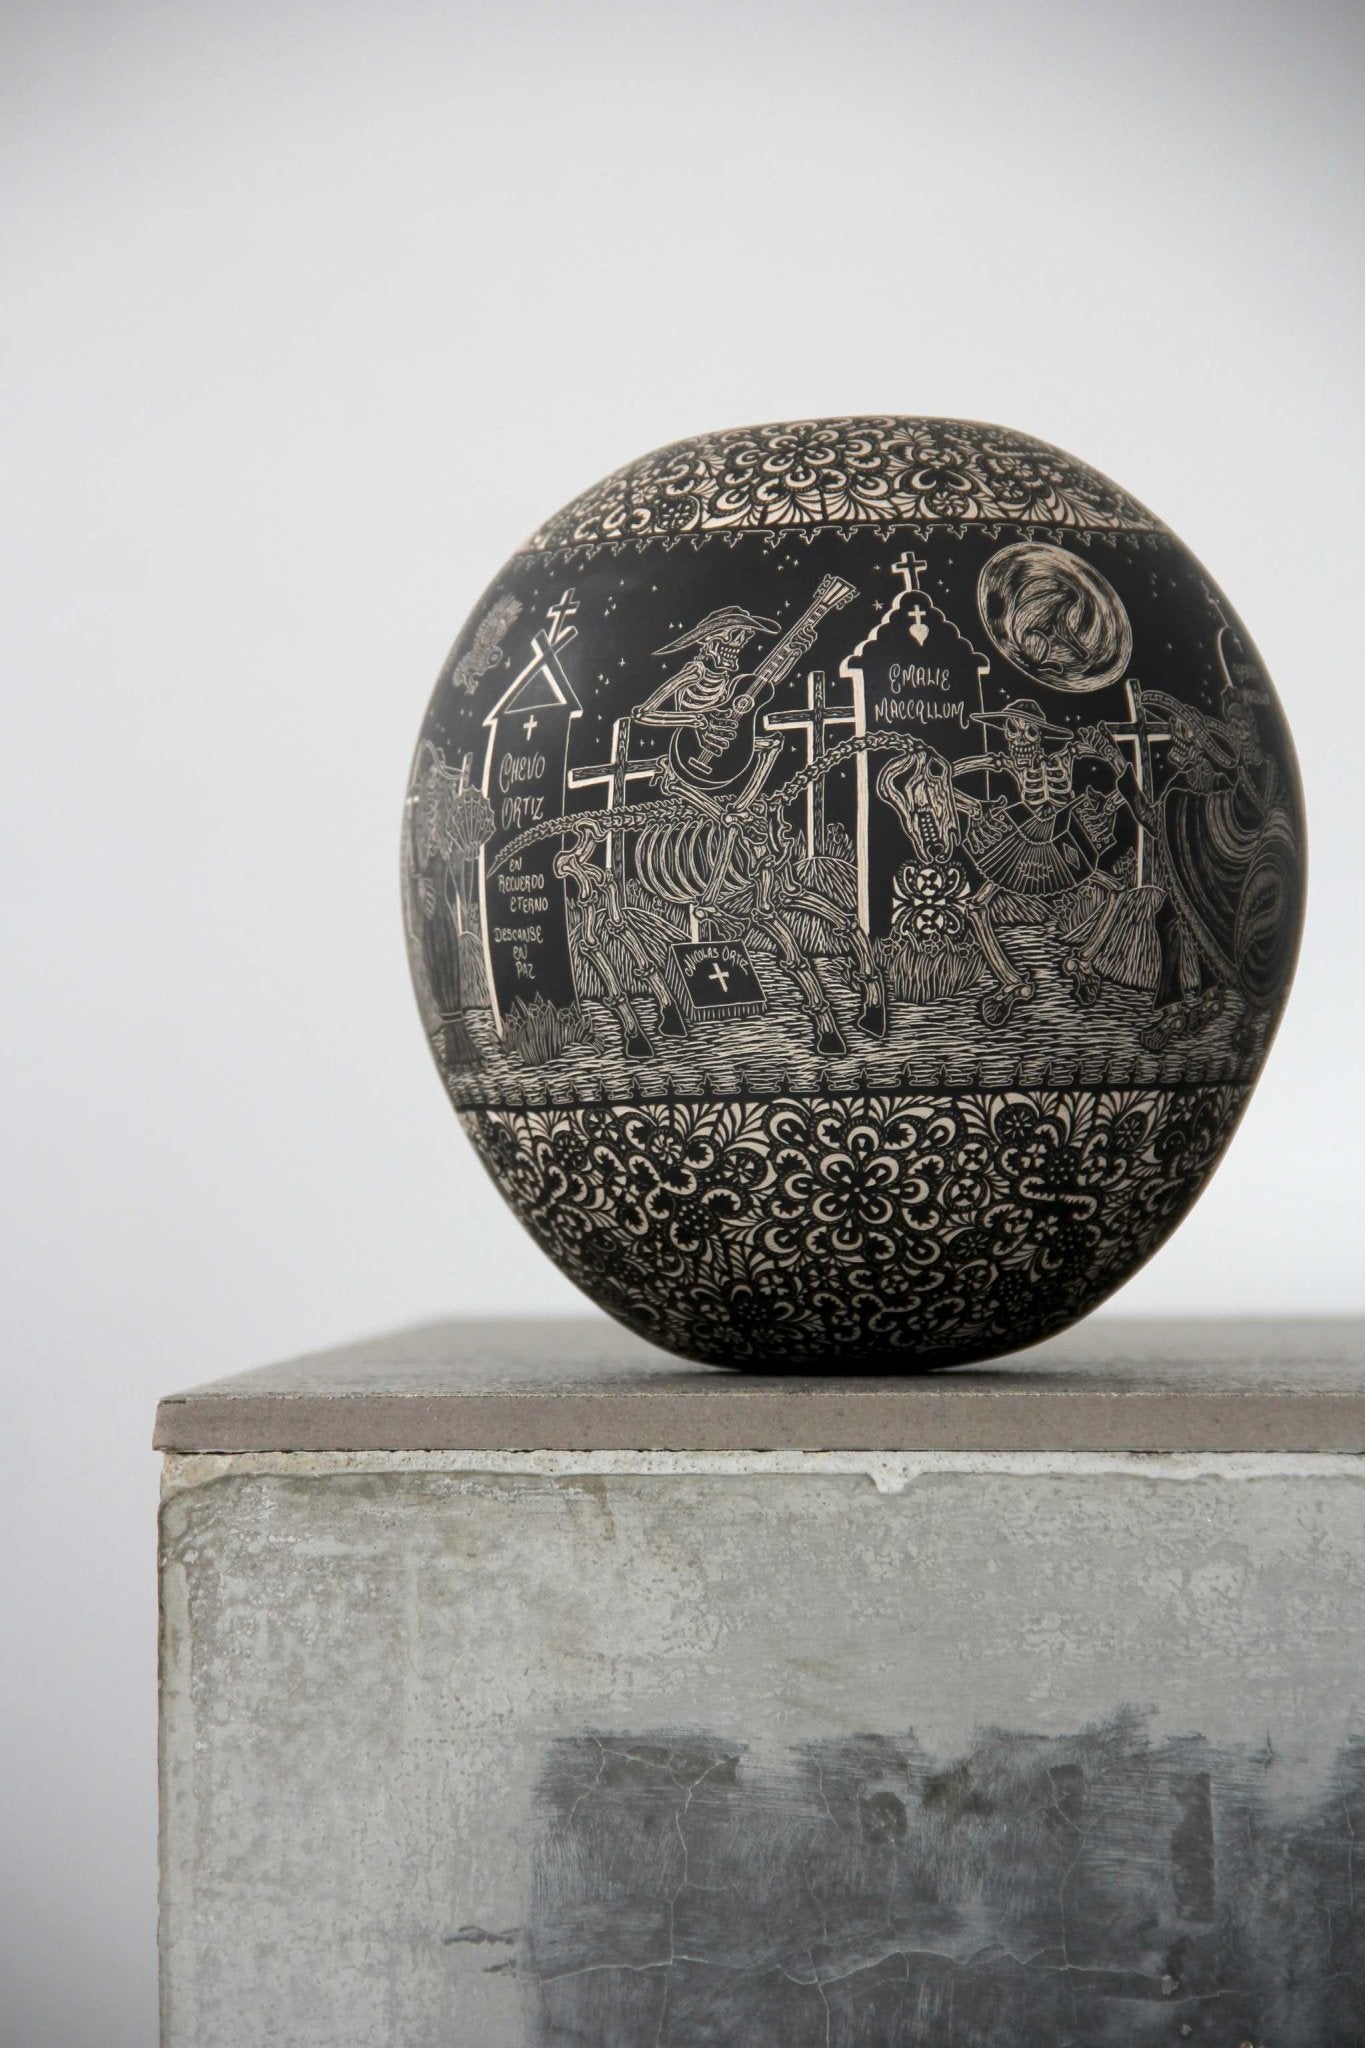 Ceramica Mata Ortiz - Riposa in pace - Notte - Arte Huichol - Marakame